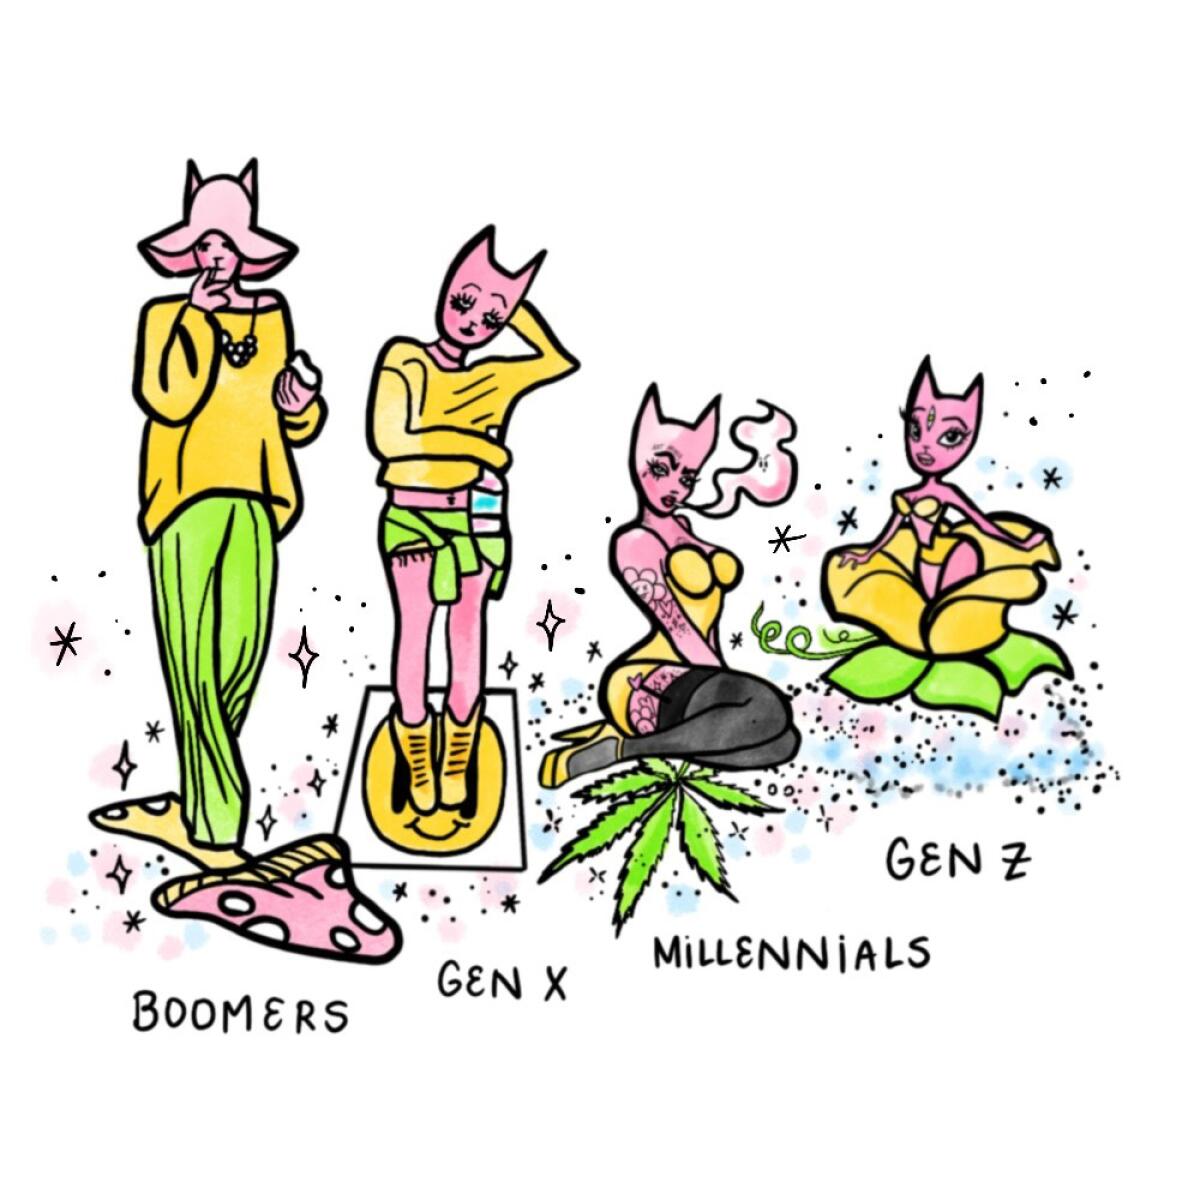 An illustration of four generations: boomers, Gen X, millennials and Gen Z